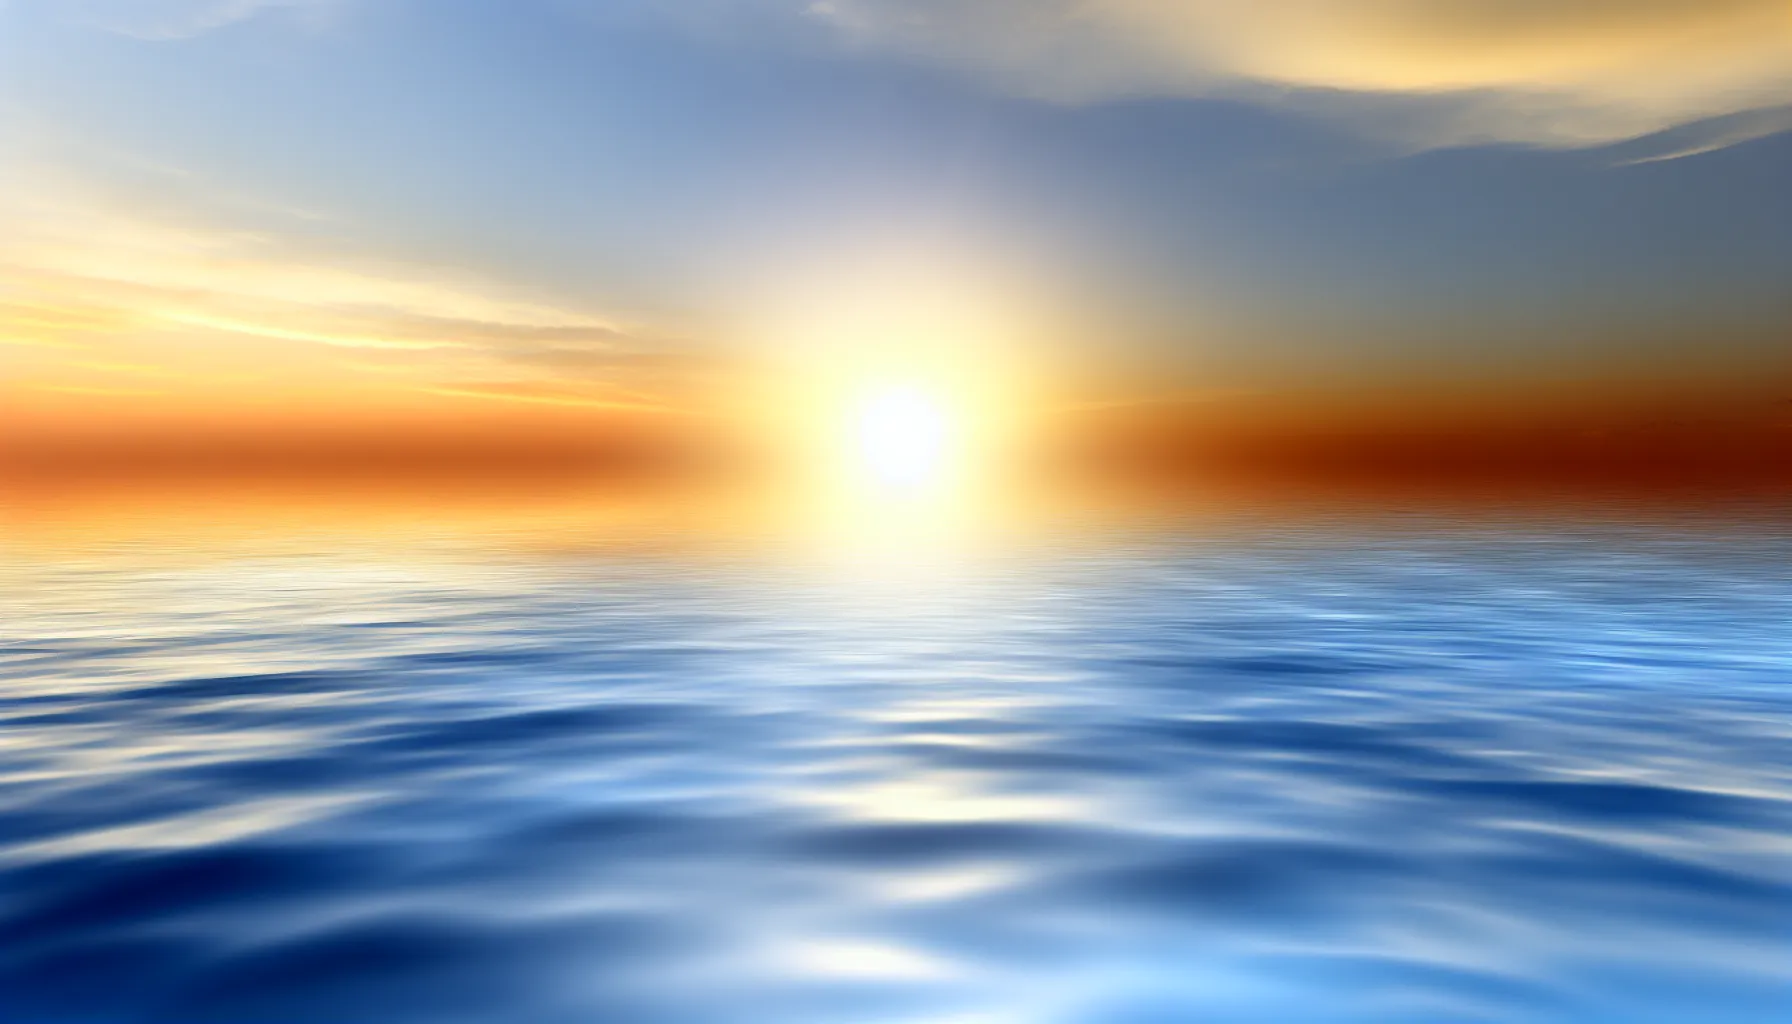 Optimistic sunrise over a calm sea